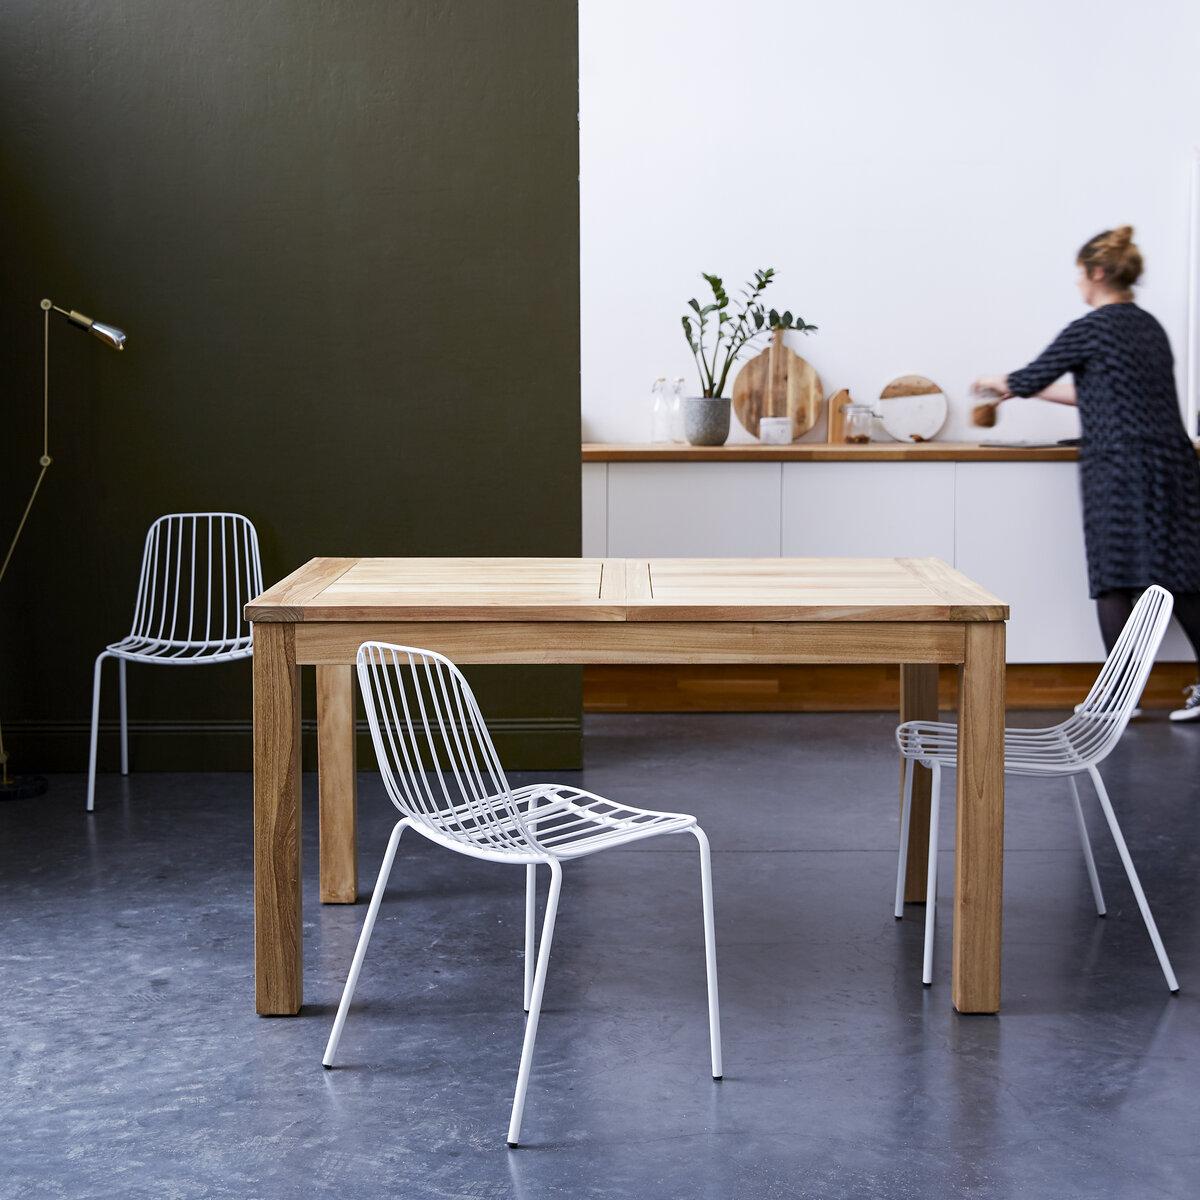 Abbinamento sedie stile vintage e tavolo moderno - Tikamoon